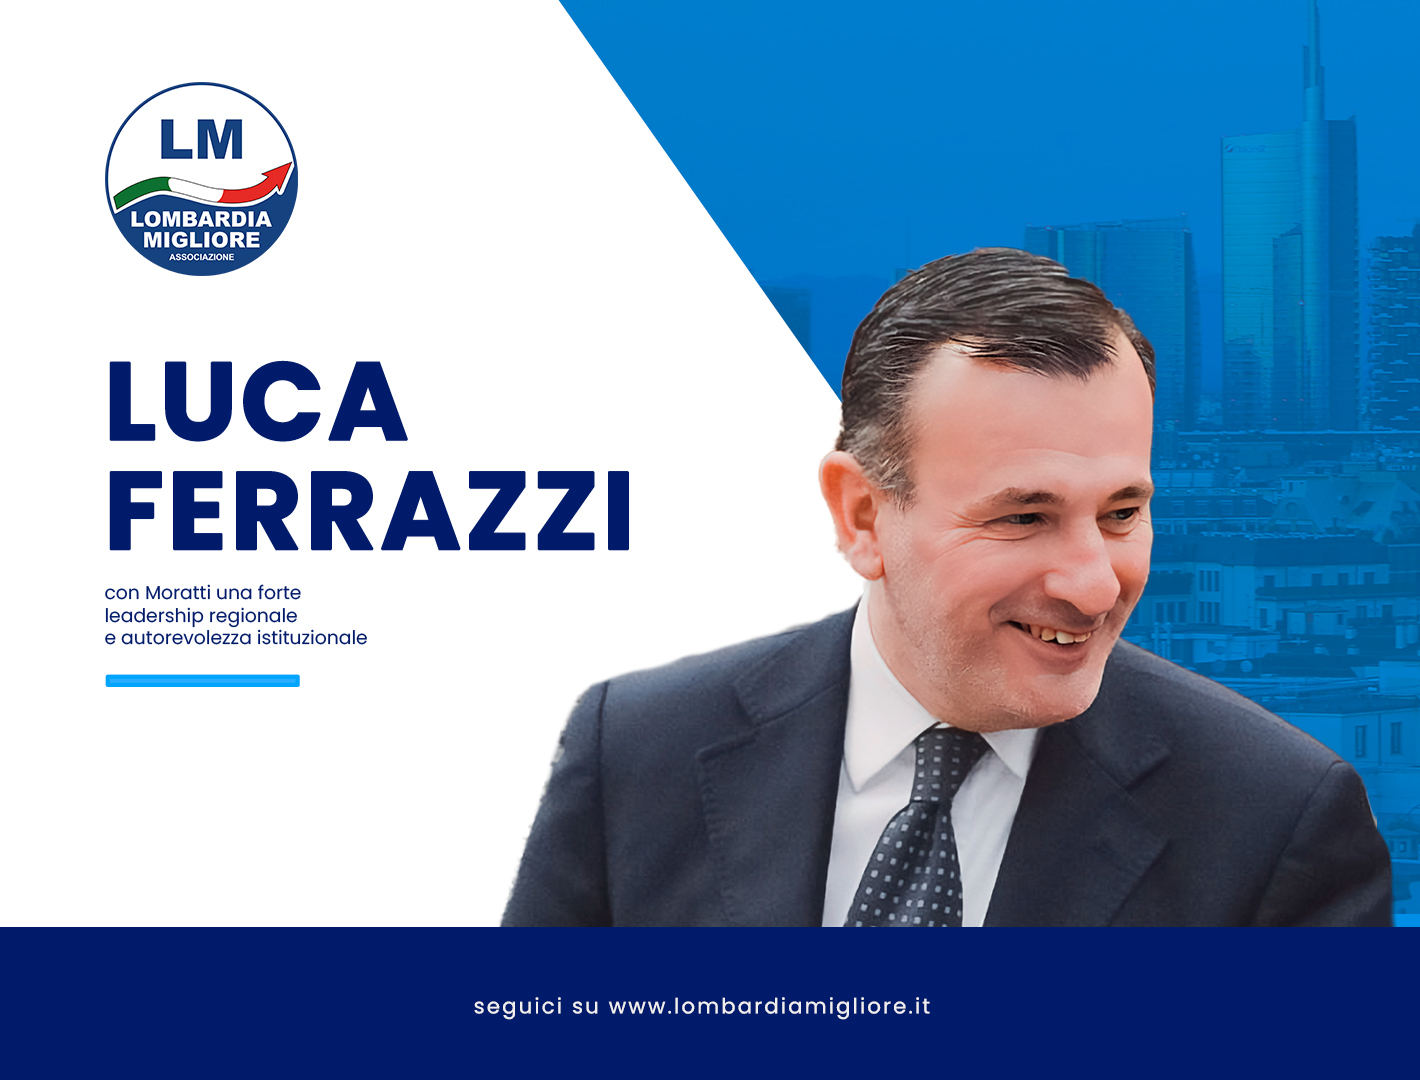 Ferrazzi: "Con Moratti forte leadership regionale e autorevolezza istituzionale"